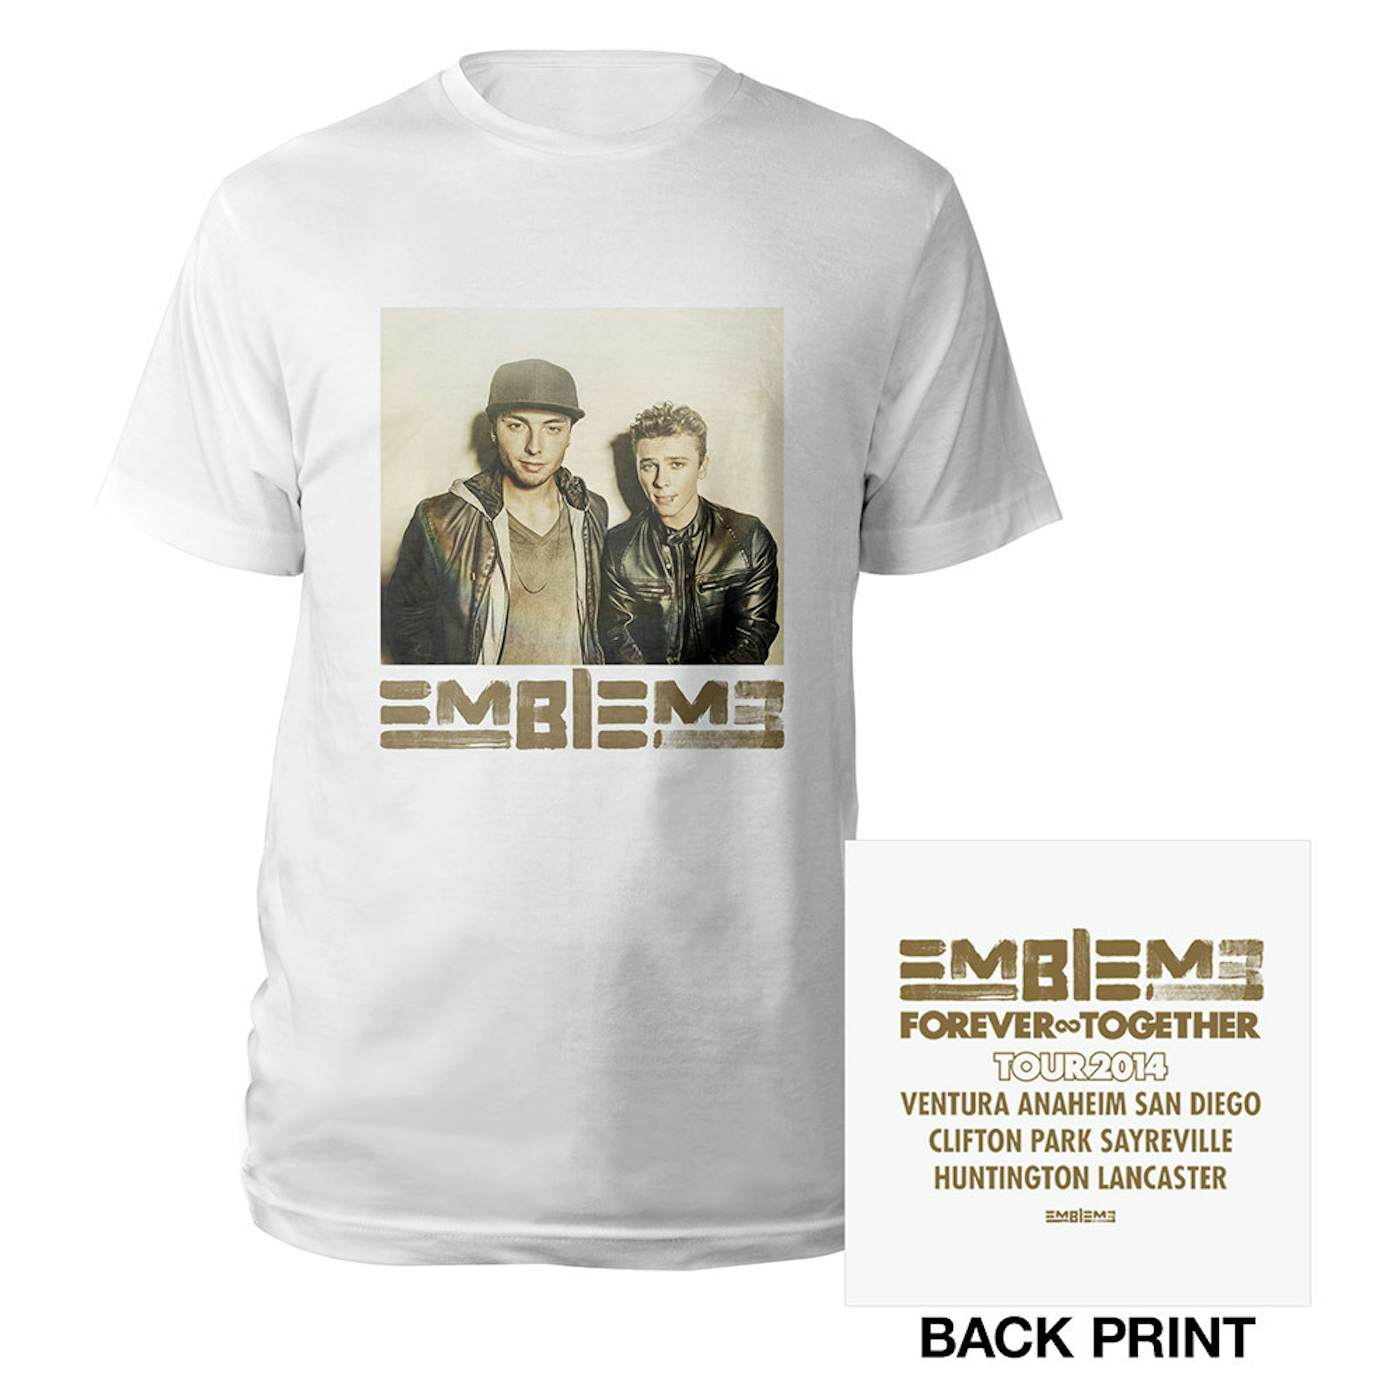 Emblem3 Forever Together Tour Event Tee